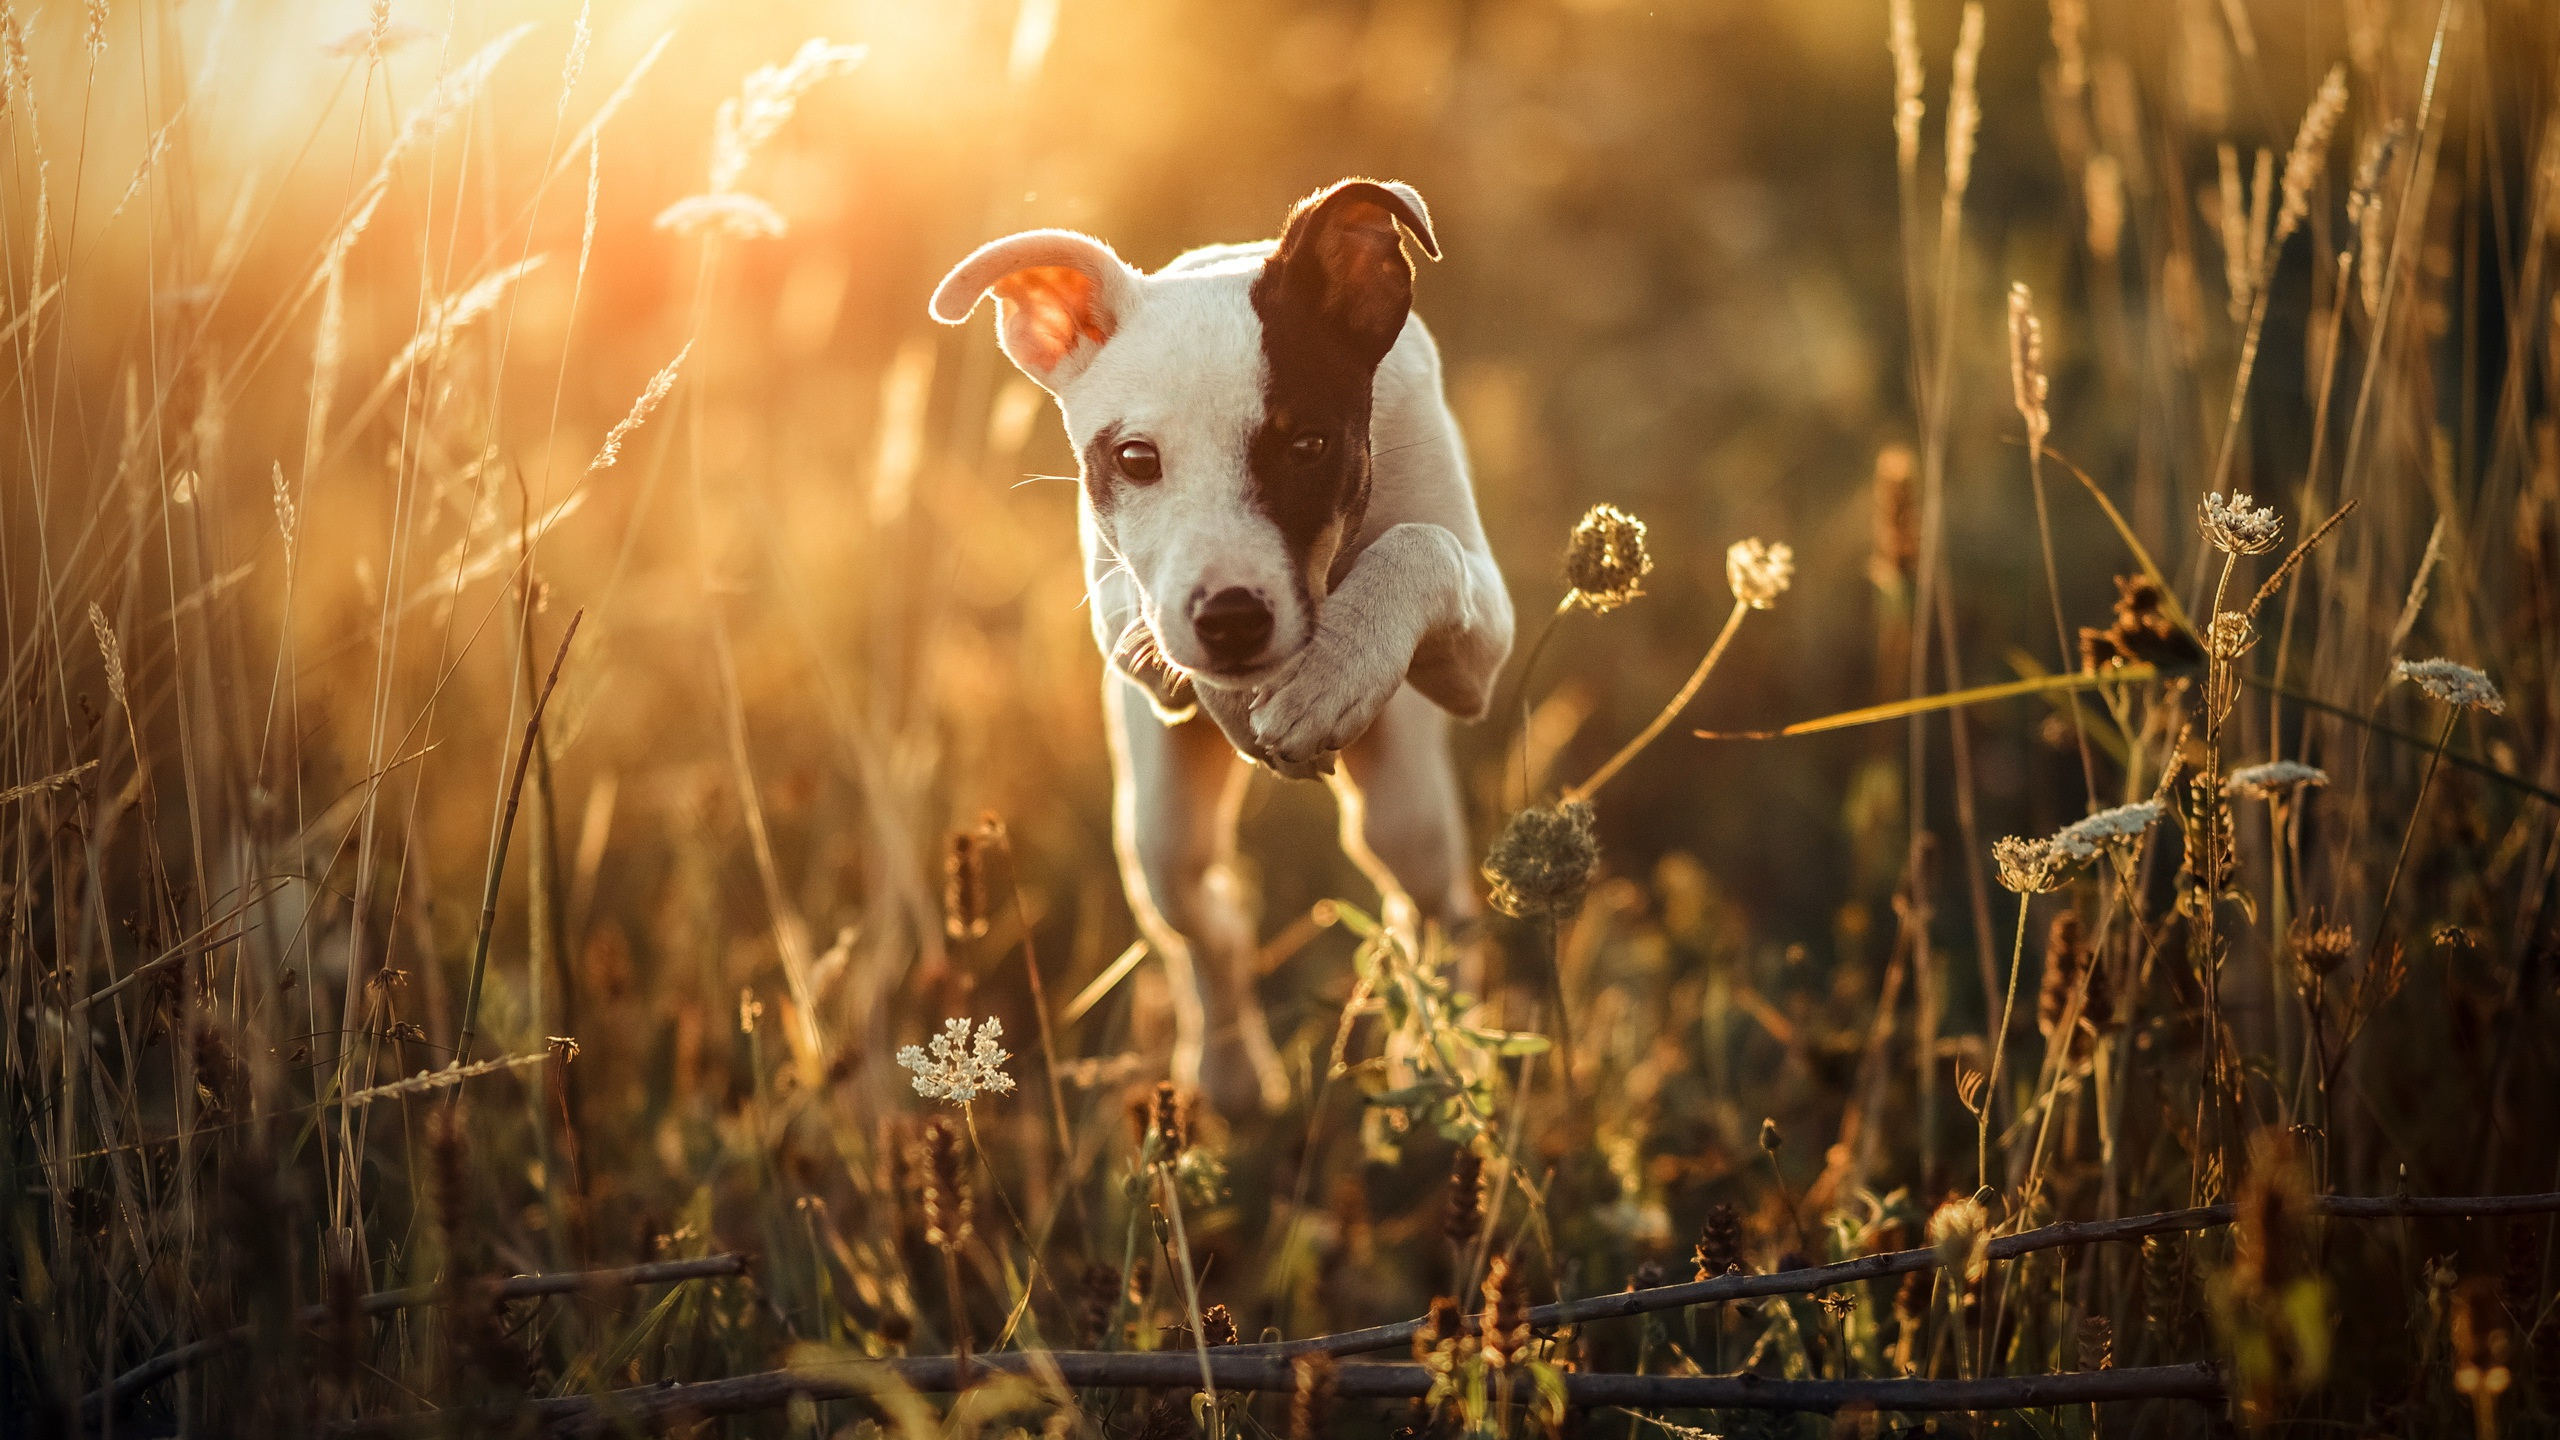 草, 品种的狗, 小狗, 光, 阳光 壁纸 2560x1440 允许